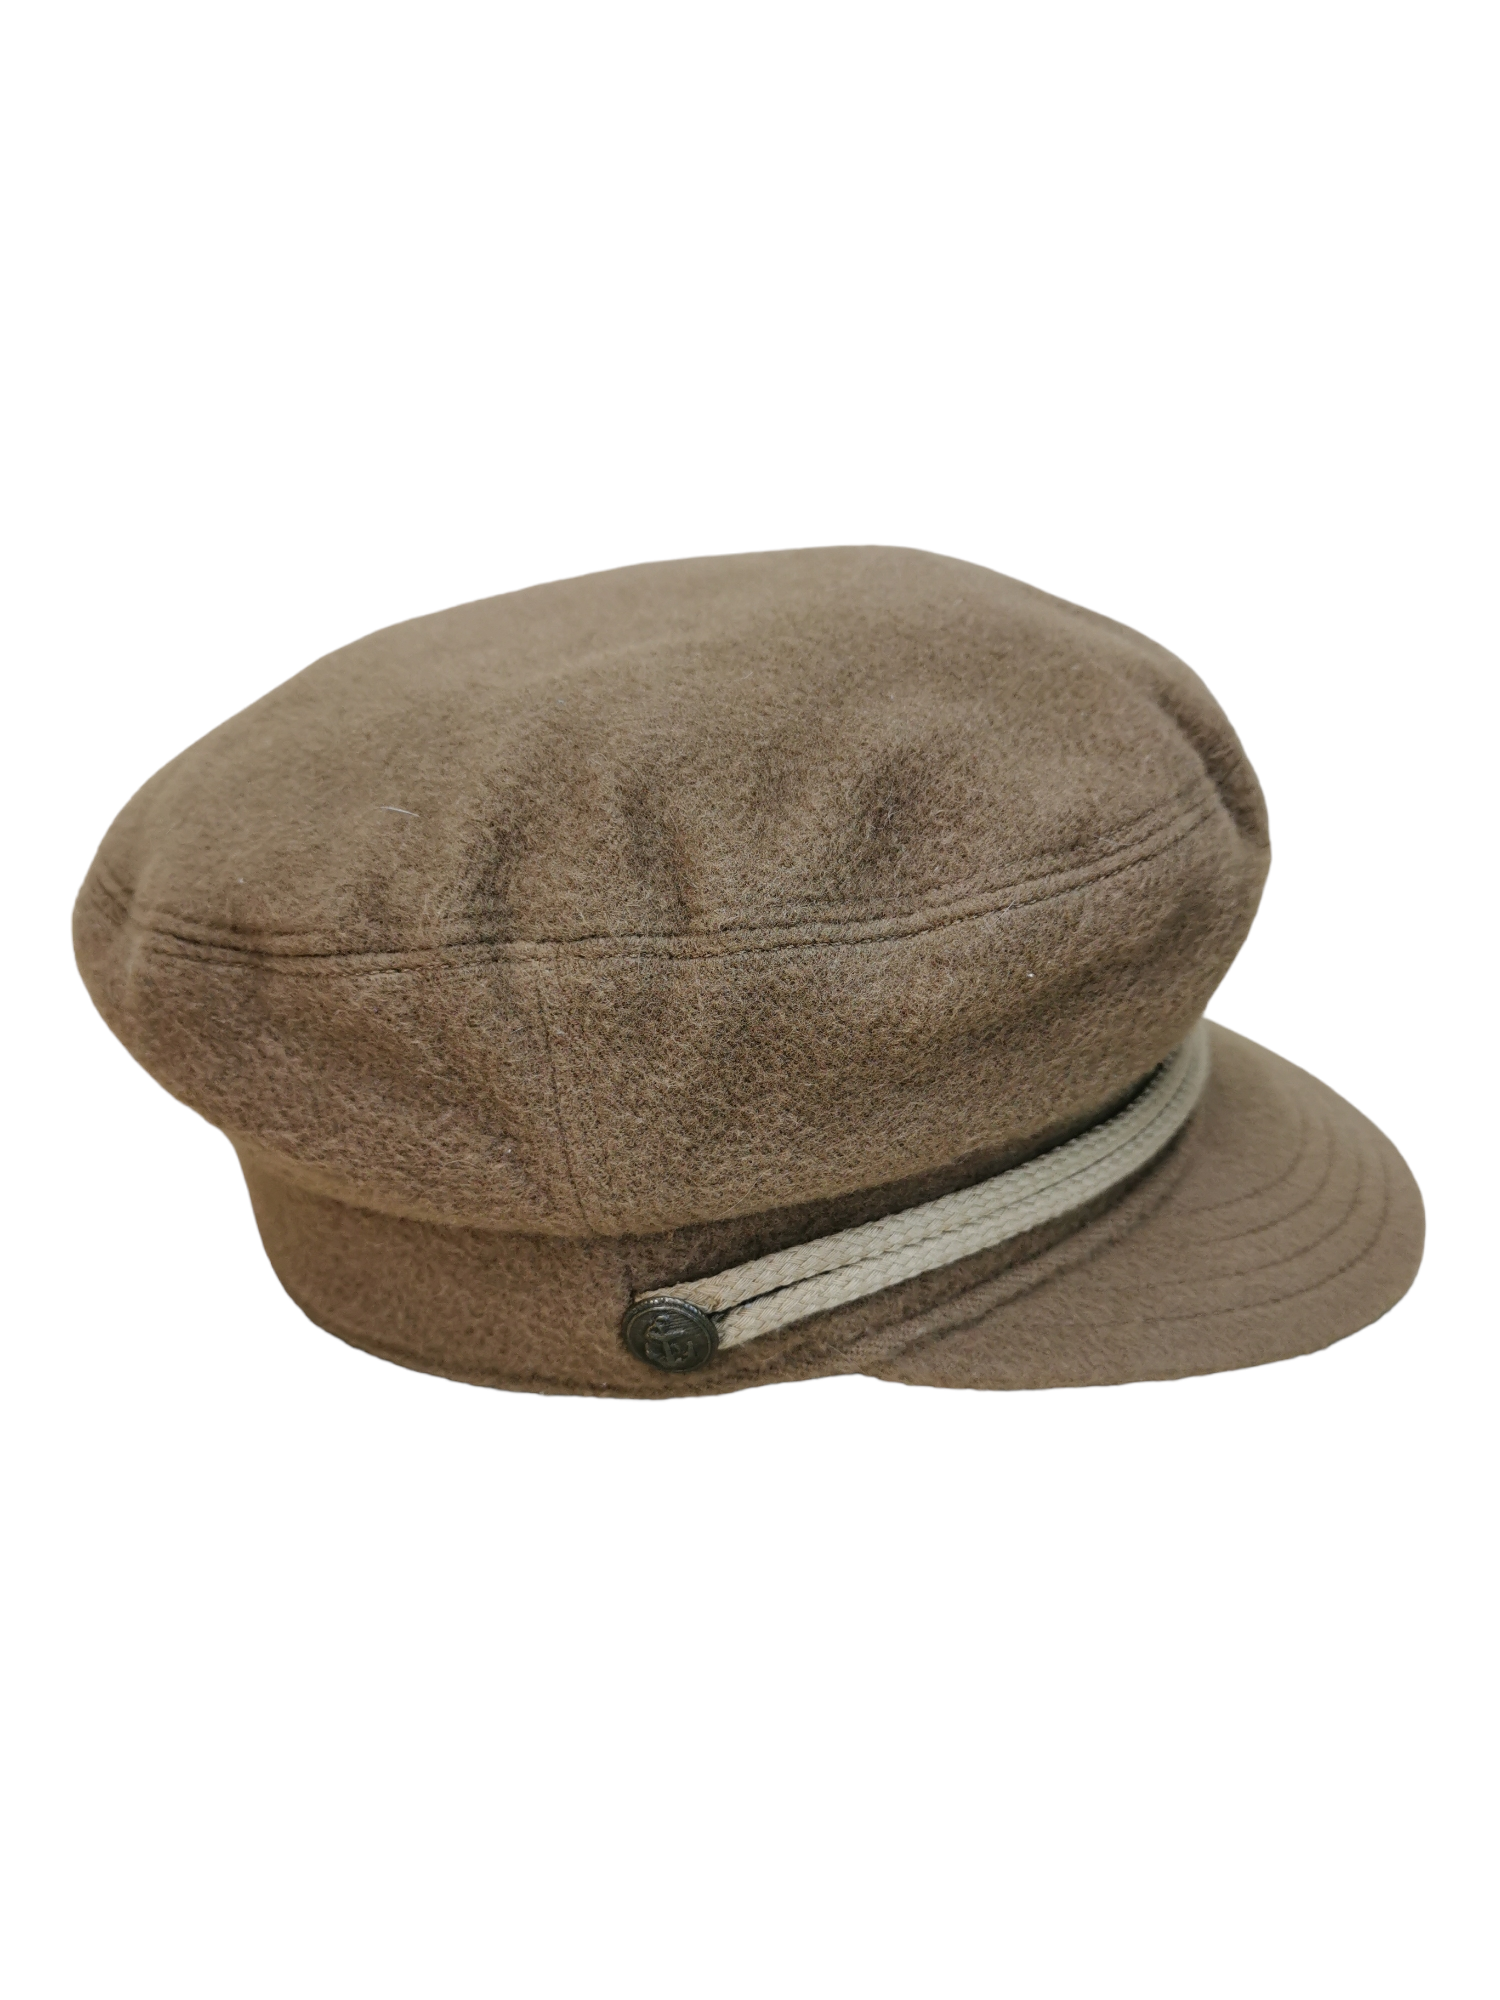 A.P.C STREETWEAR CAPTAIN DESIGN HAT CAP - 5